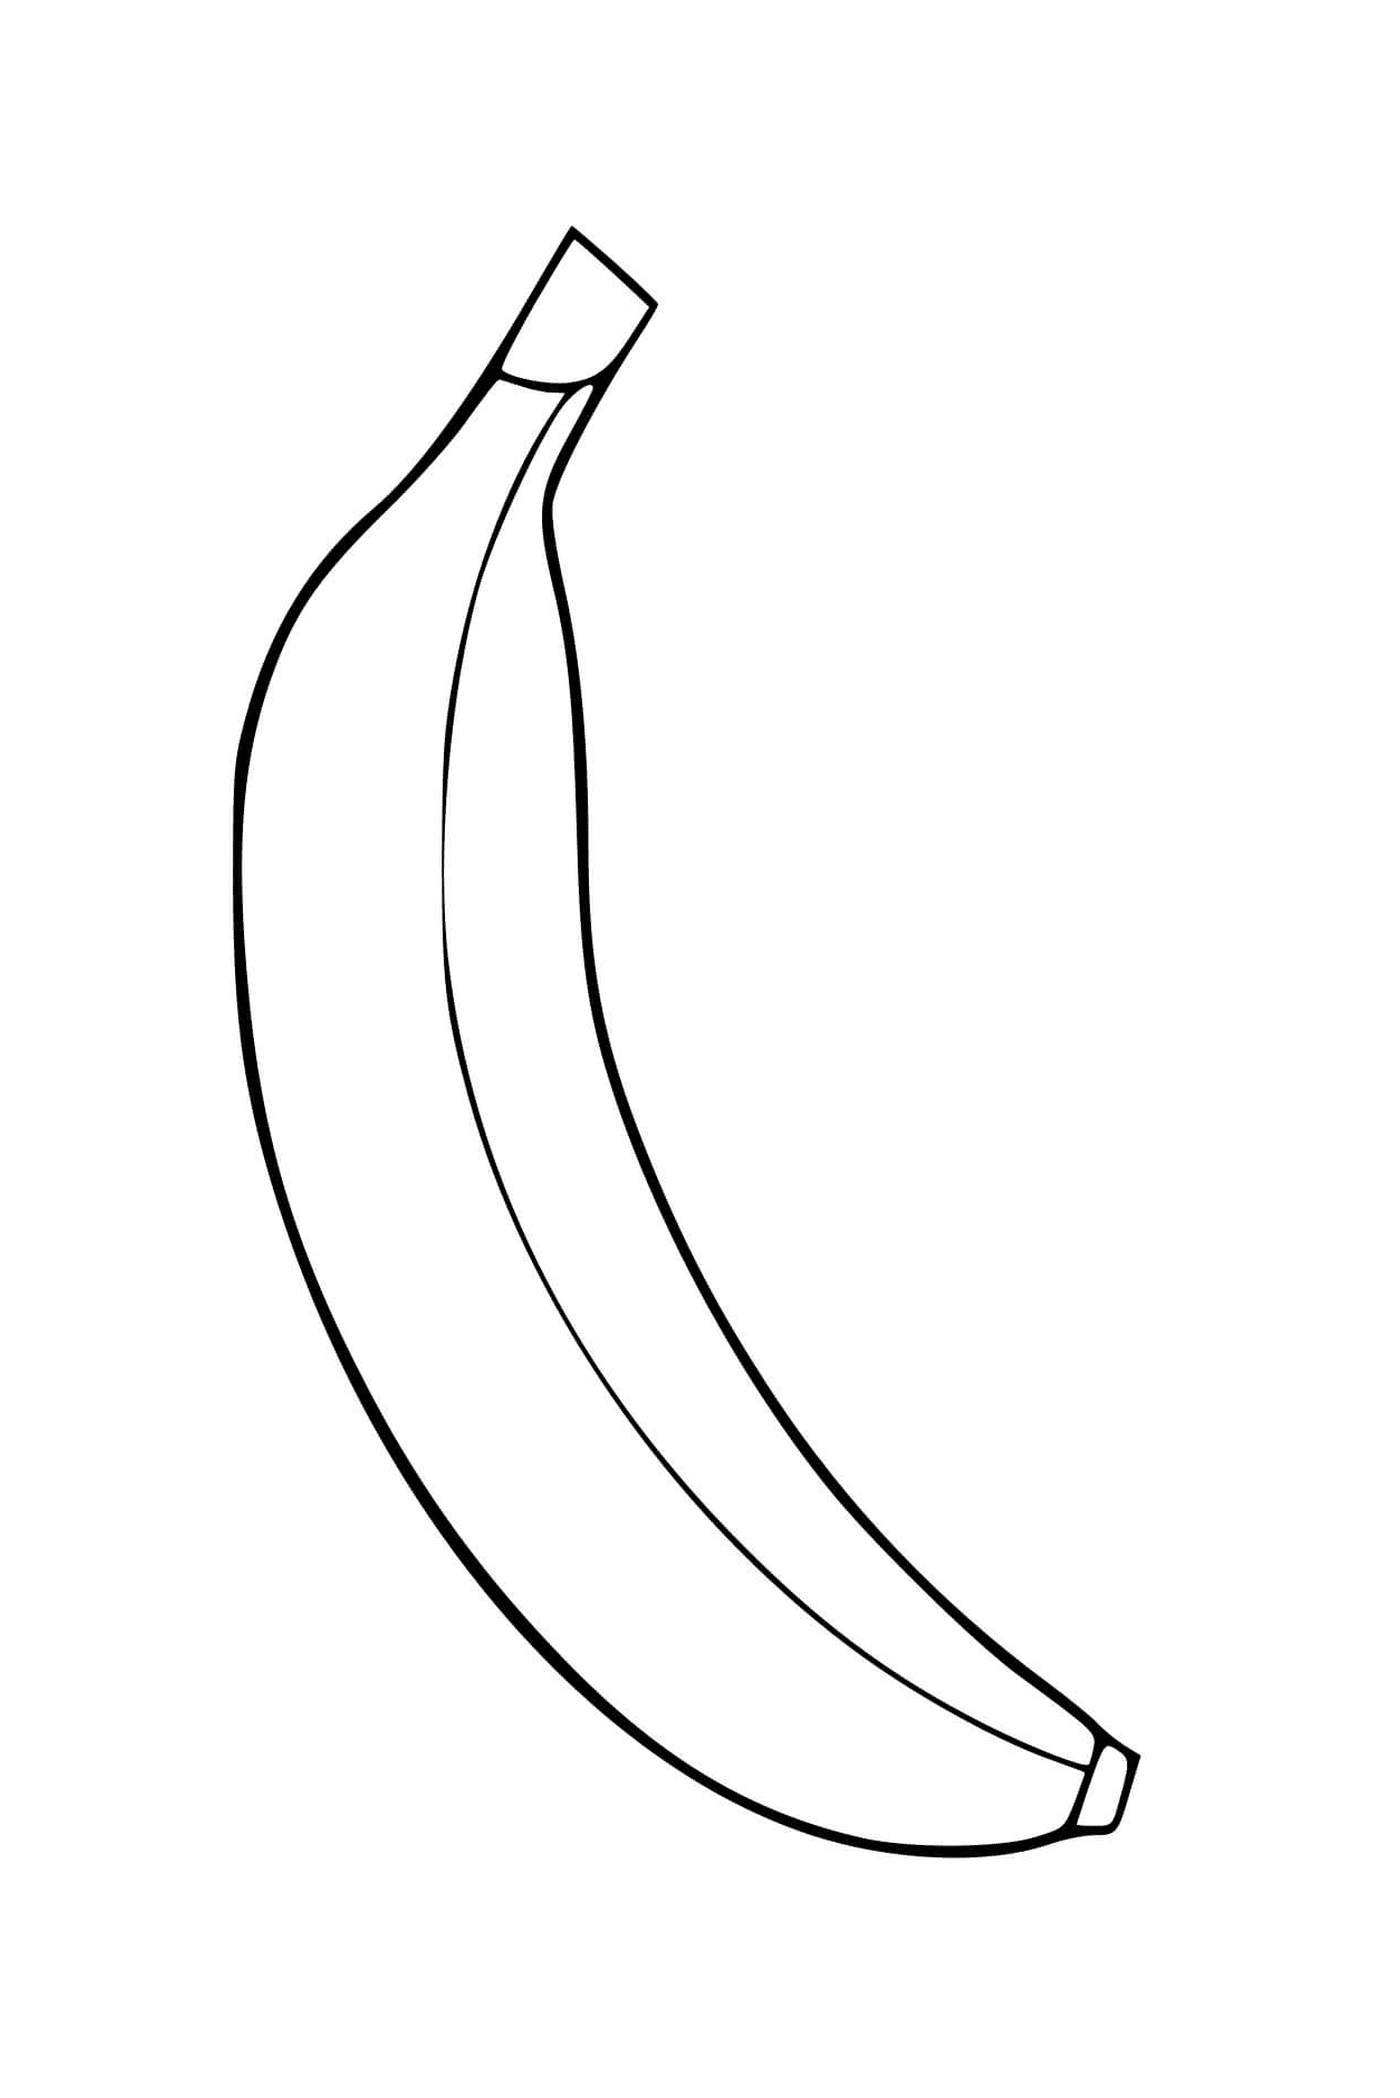  Un plátano 